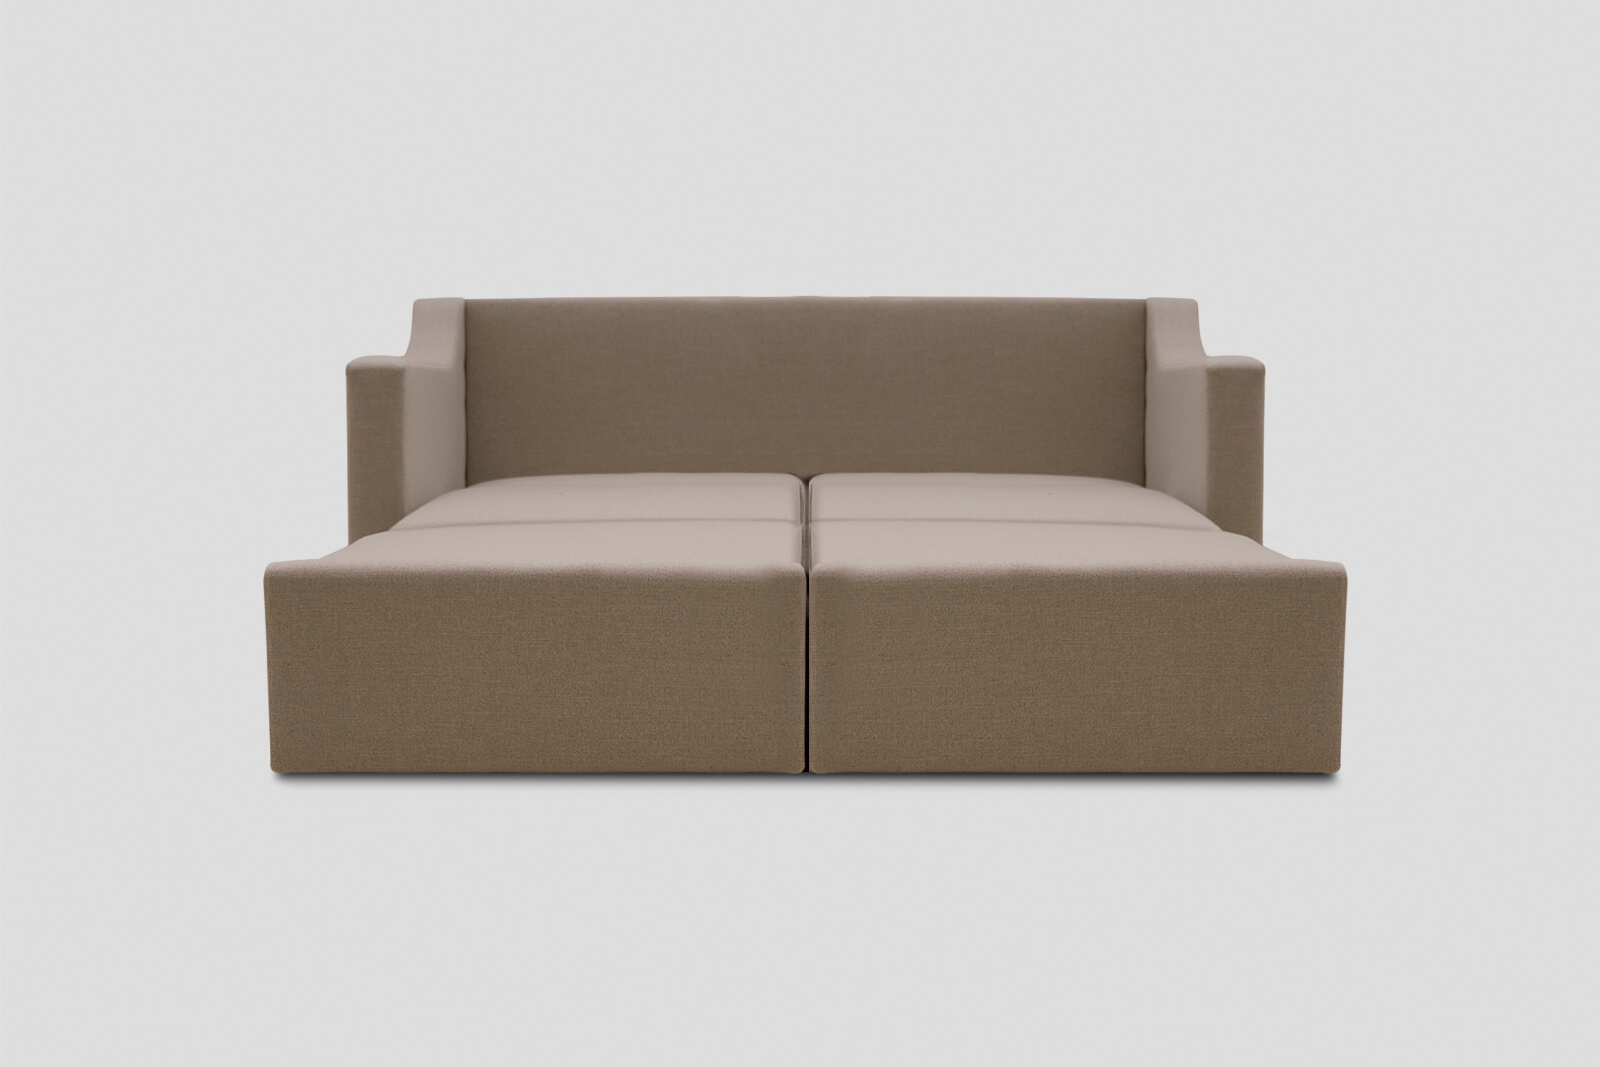 HBSB02-kingsize-sofa-bed-husk-bed-front